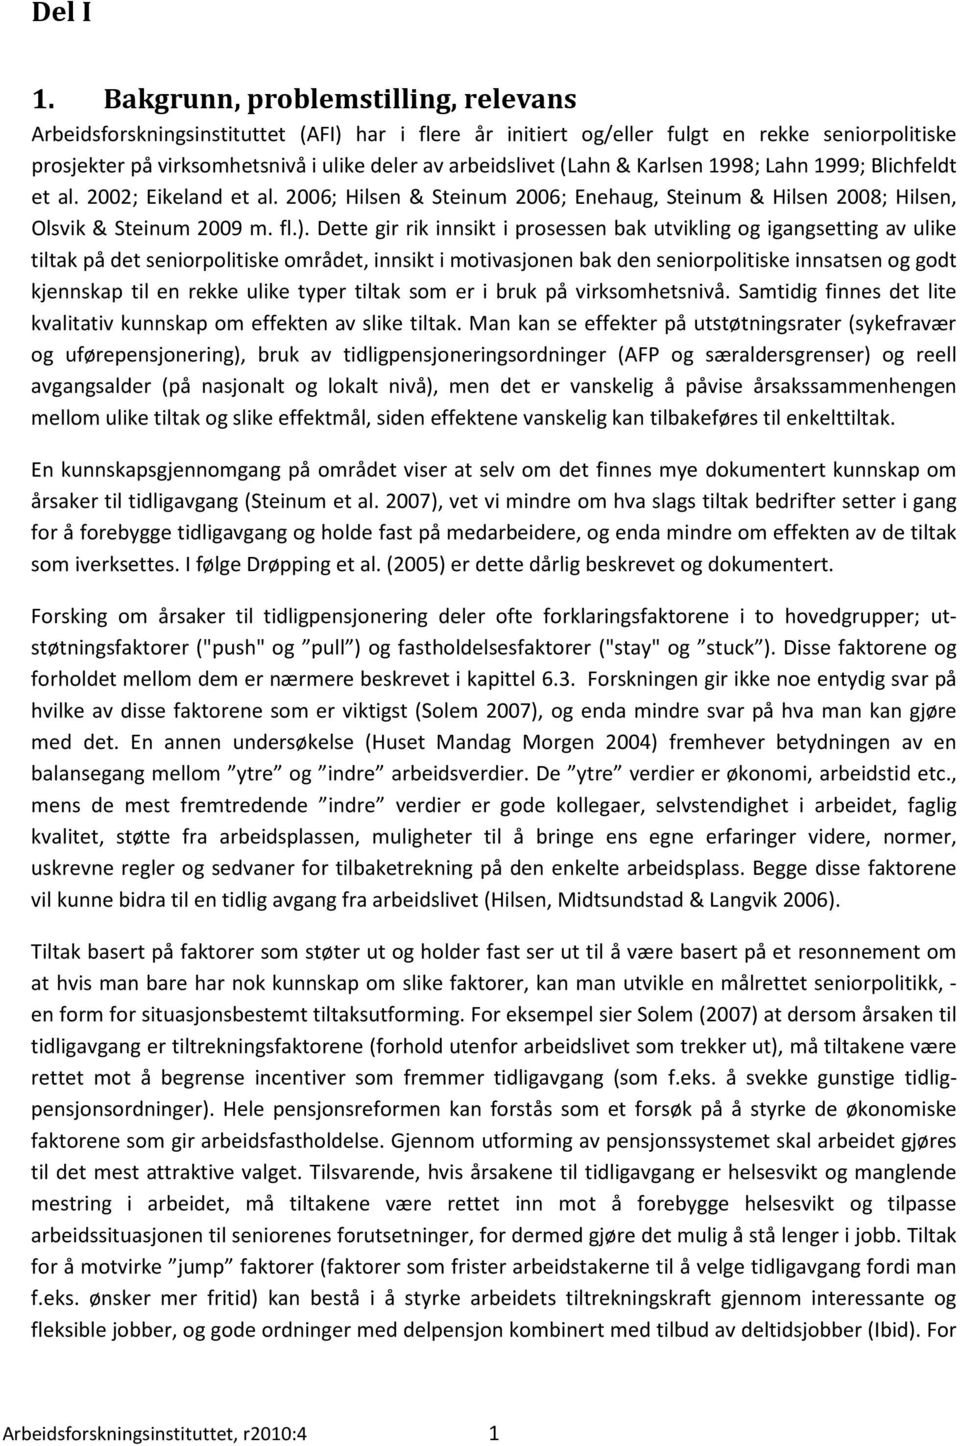 (Lahn & Karlsen 1998; Lahn 1999; Blichfeldt et al. 2002; Eikeland et al. 2006; Hilsen & Steinum 2006; Enehaug, Steinum & Hilsen 2008; Hilsen, Olsvik & Steinum 2009 m. fl.).